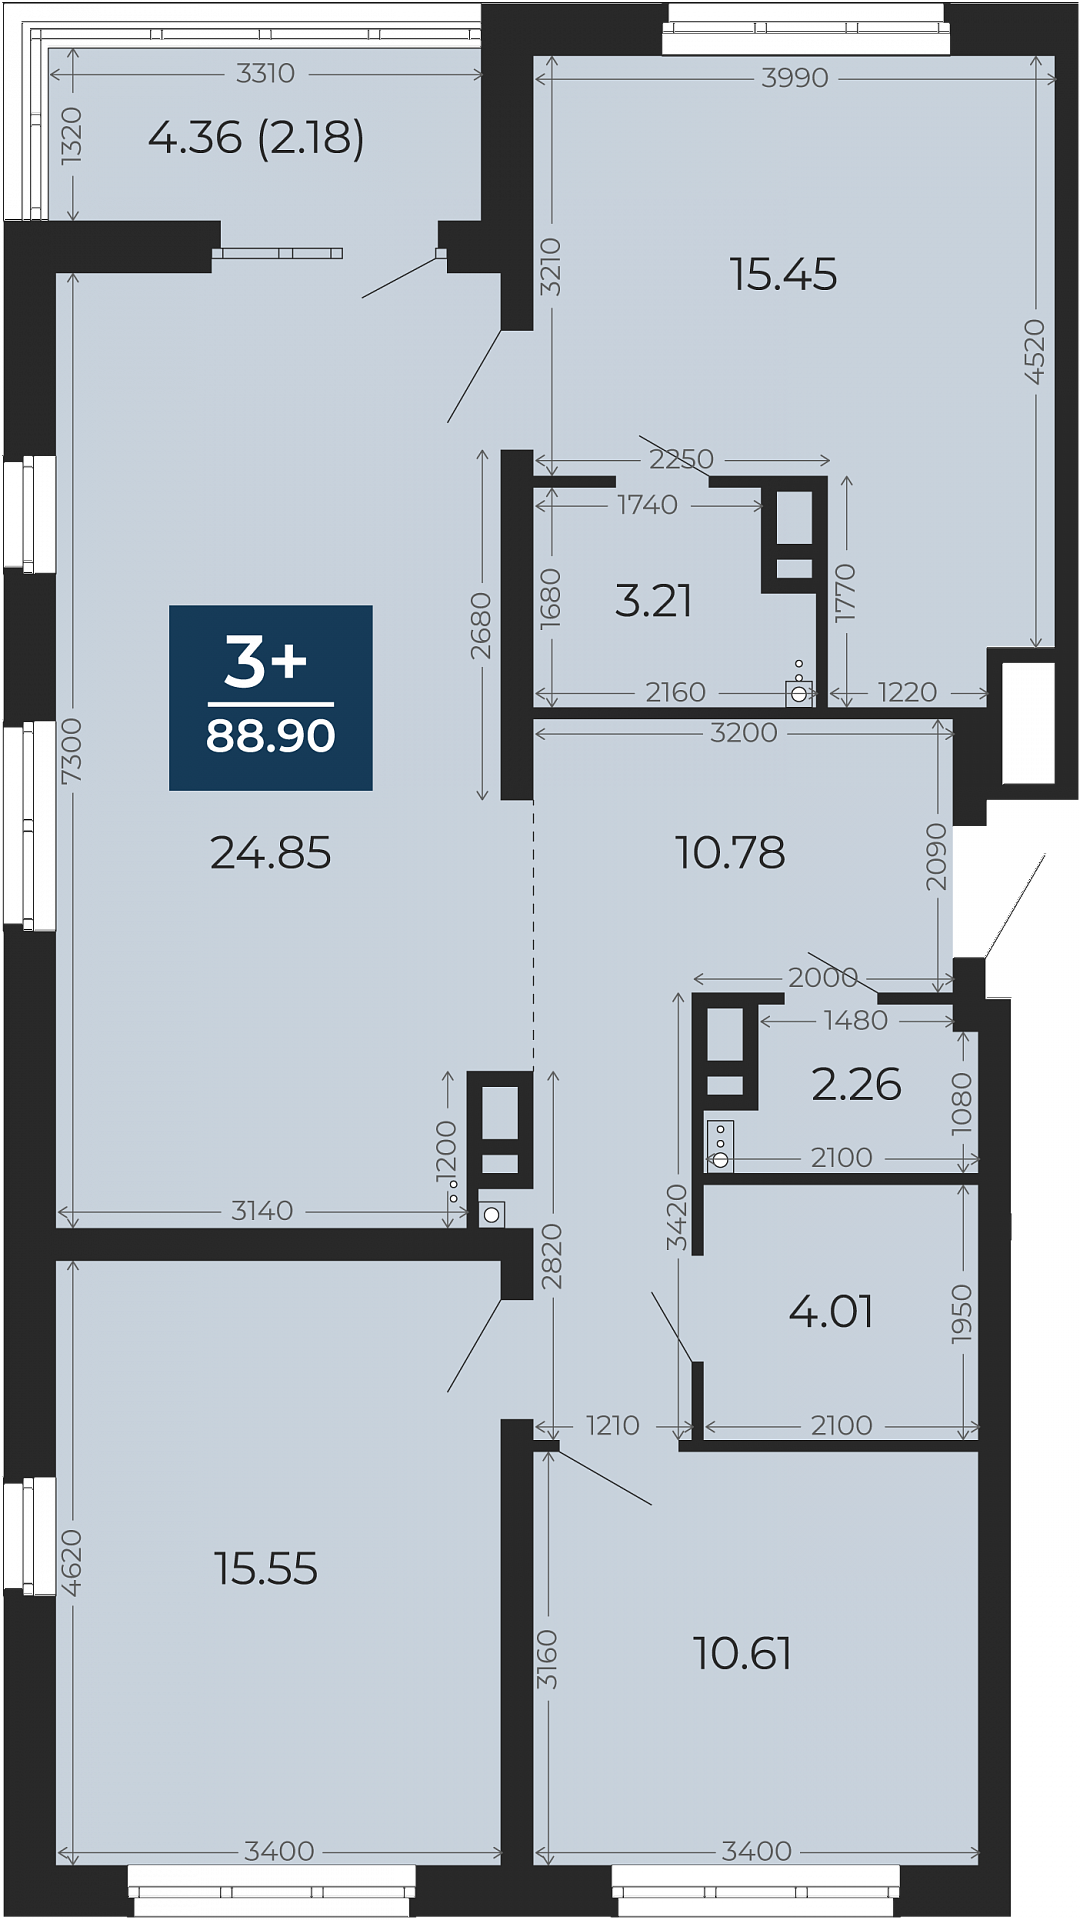 Квартира № 33, 3-комнатная, 88.9 кв. м, 7 этаж